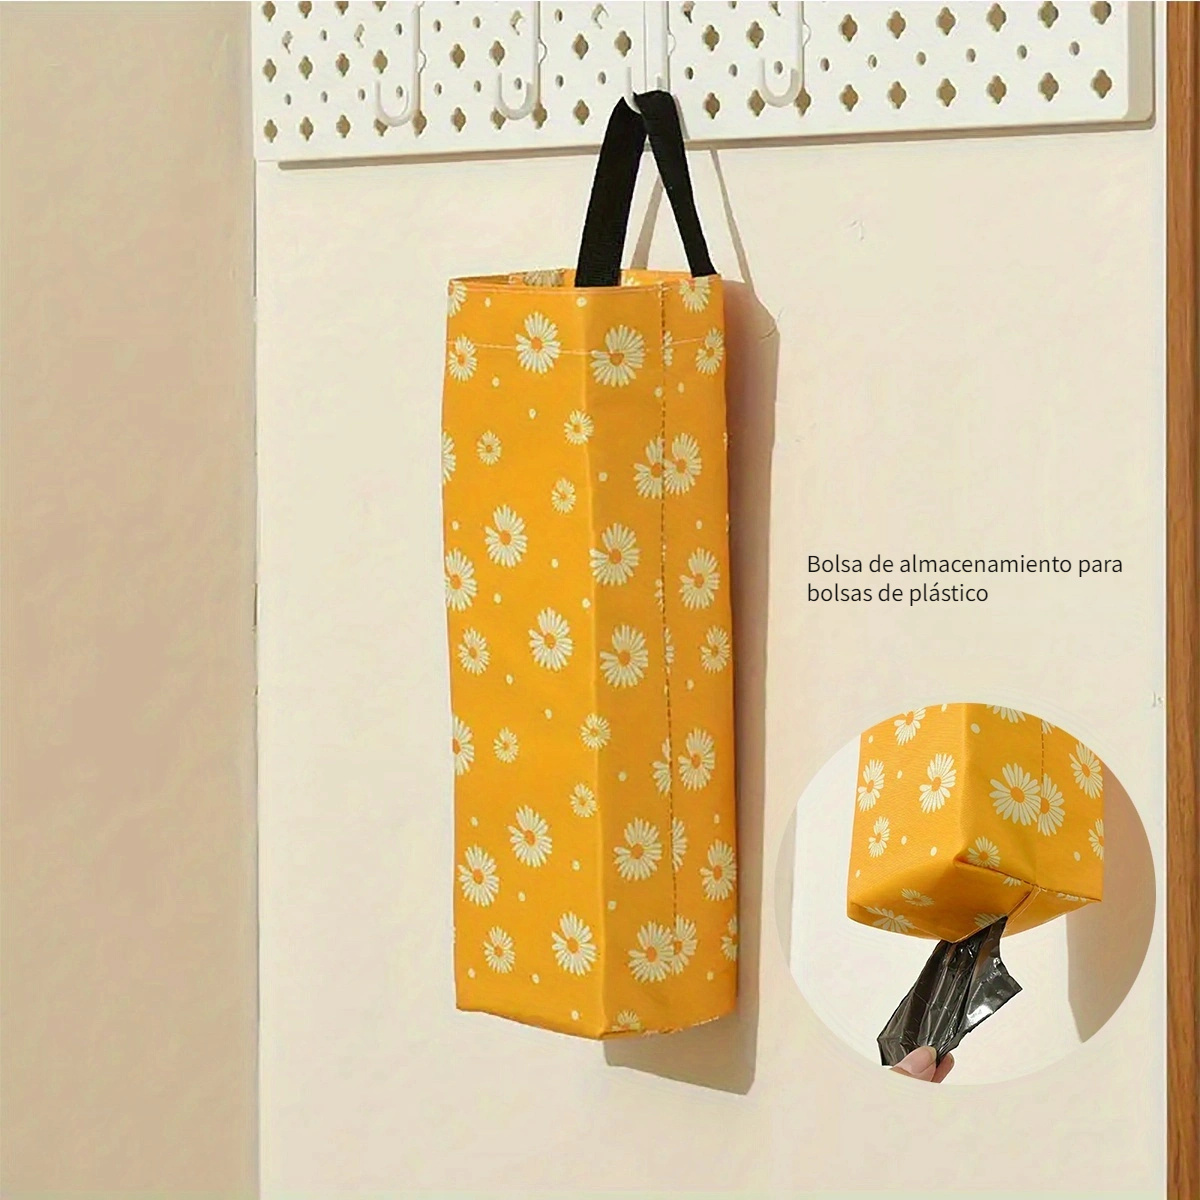 Dispensador de rollos de bolsas de plástico, recomendado para el hogar y  las tiendas de comestibles. Incluye 1 rollo de bolsa de plástico compatible